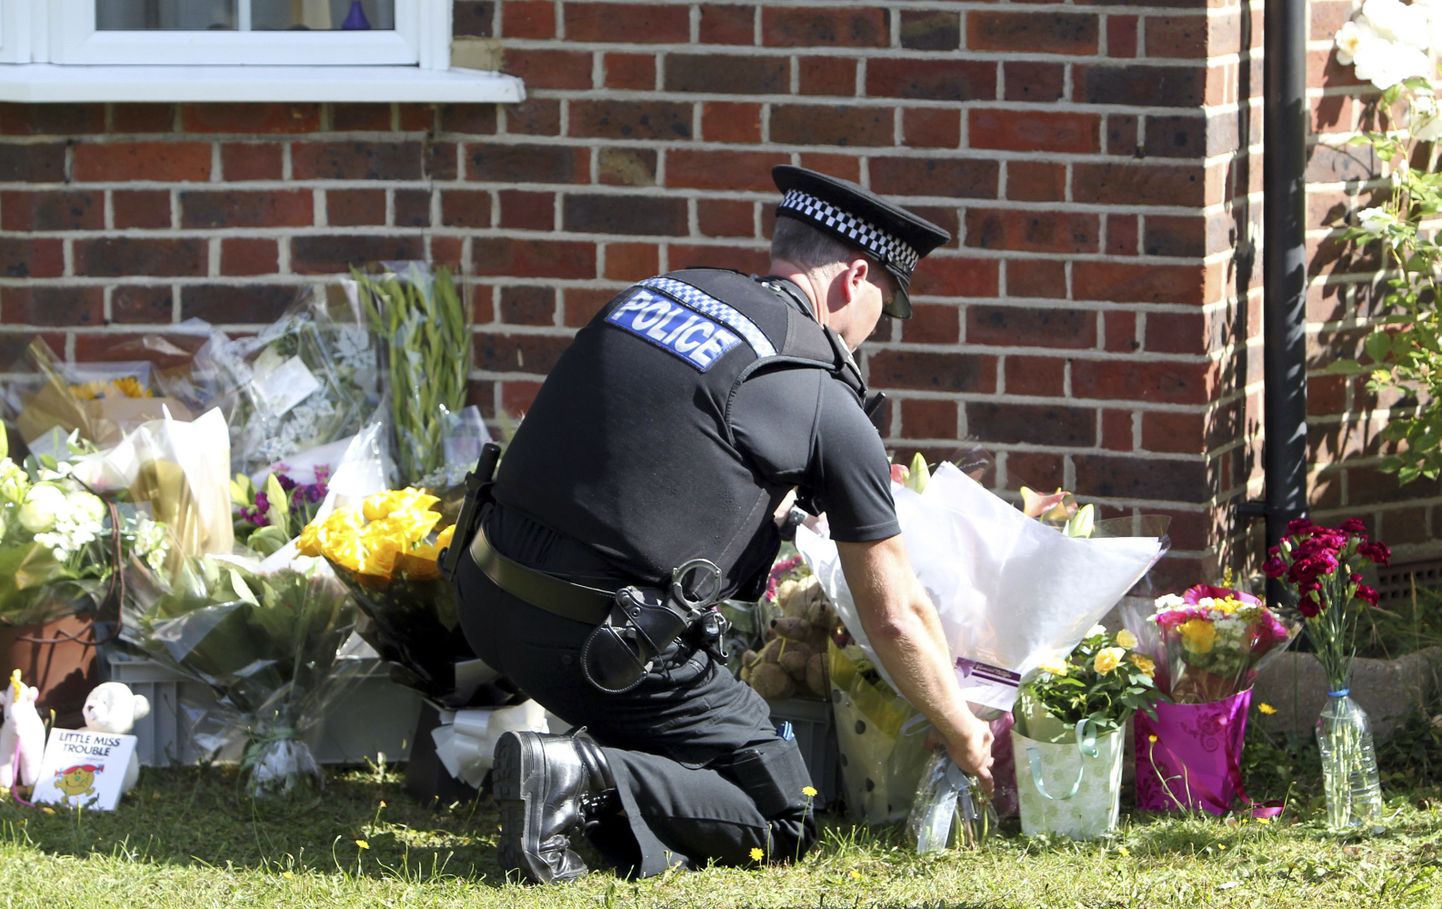 Briti politseinik asetamas lilli mõrvatud iraaklaste kodu juurde Claygate'is.